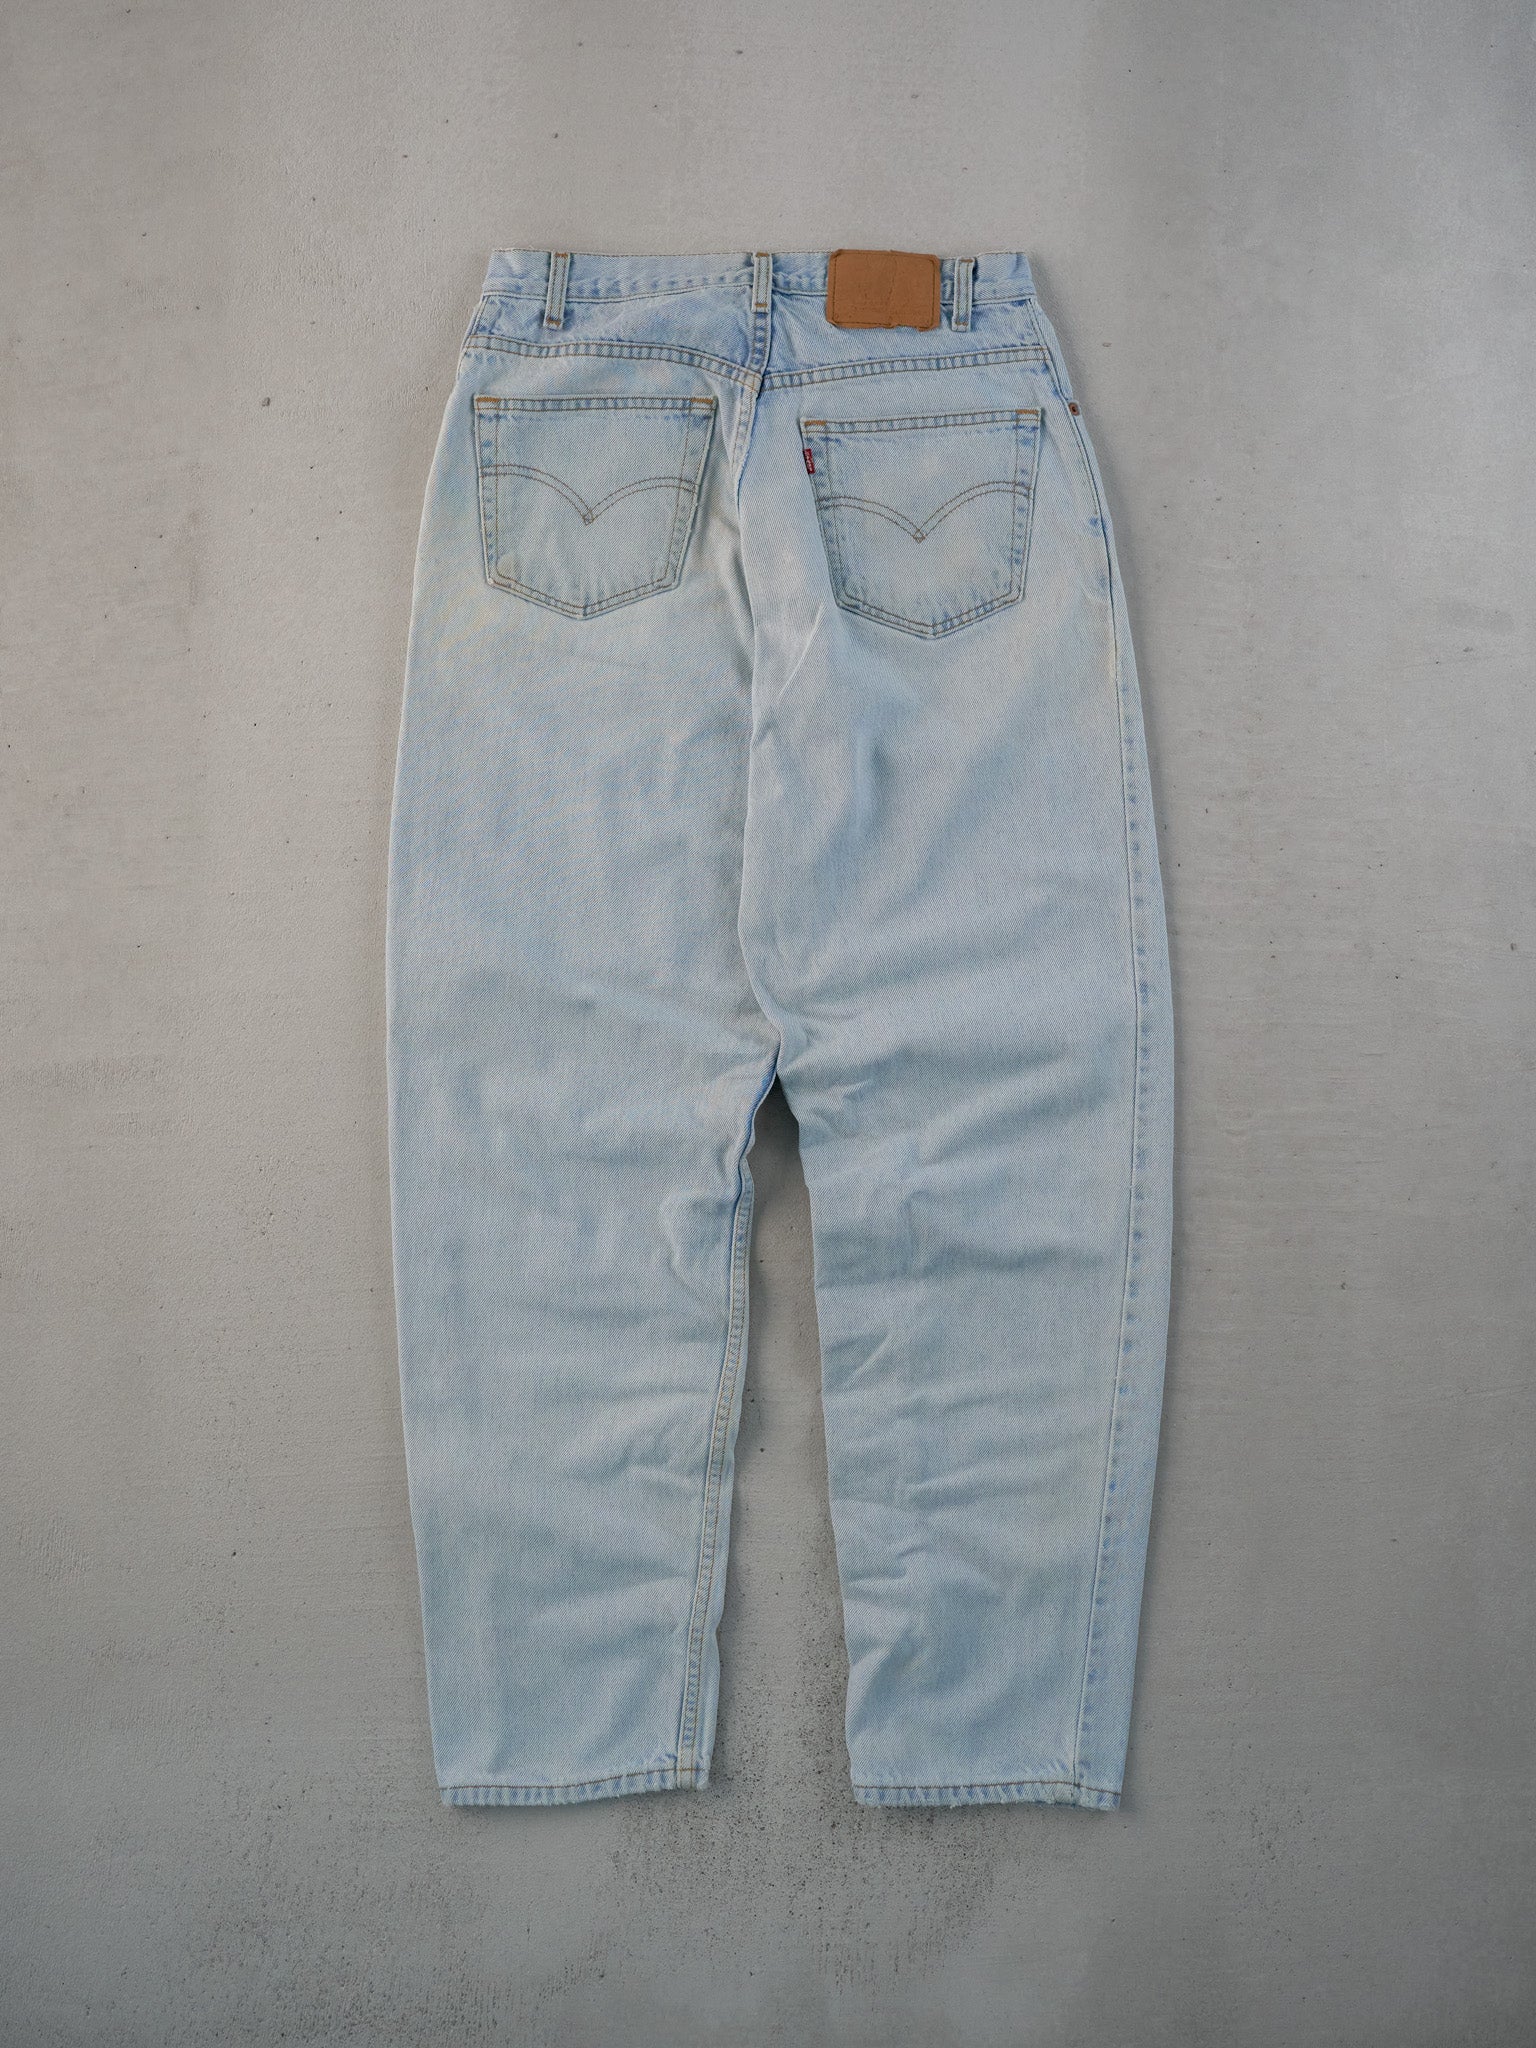 Vintage 90s Light Blue Levi's 560 Denim Jeans (31x32)